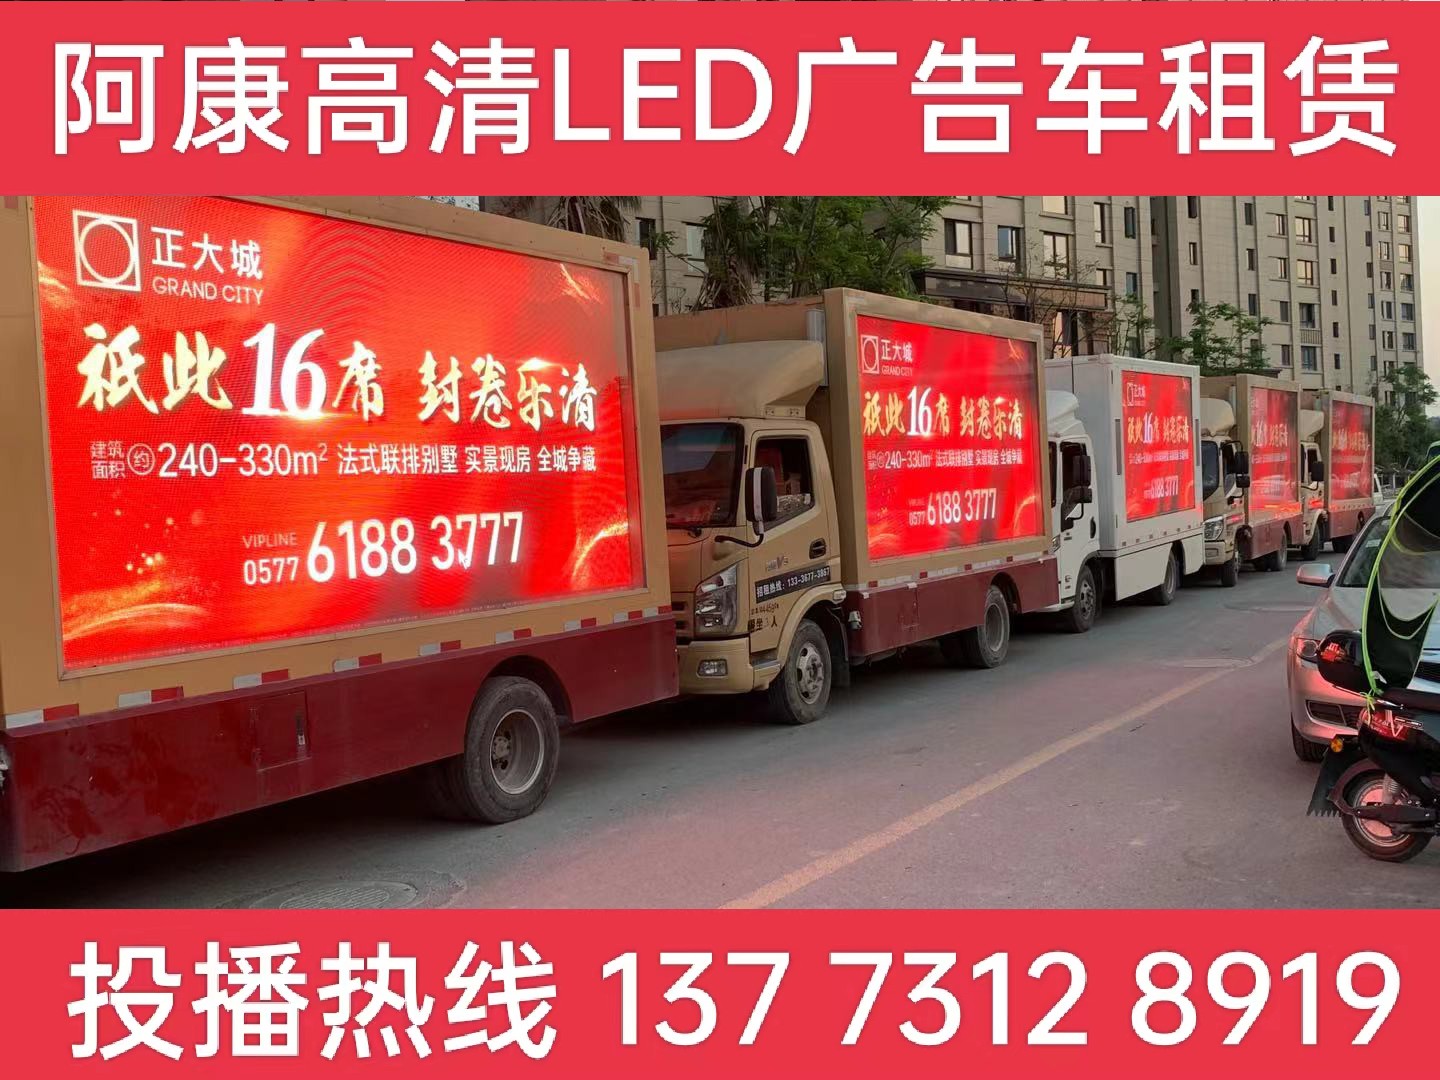 兴化LED广告车出租